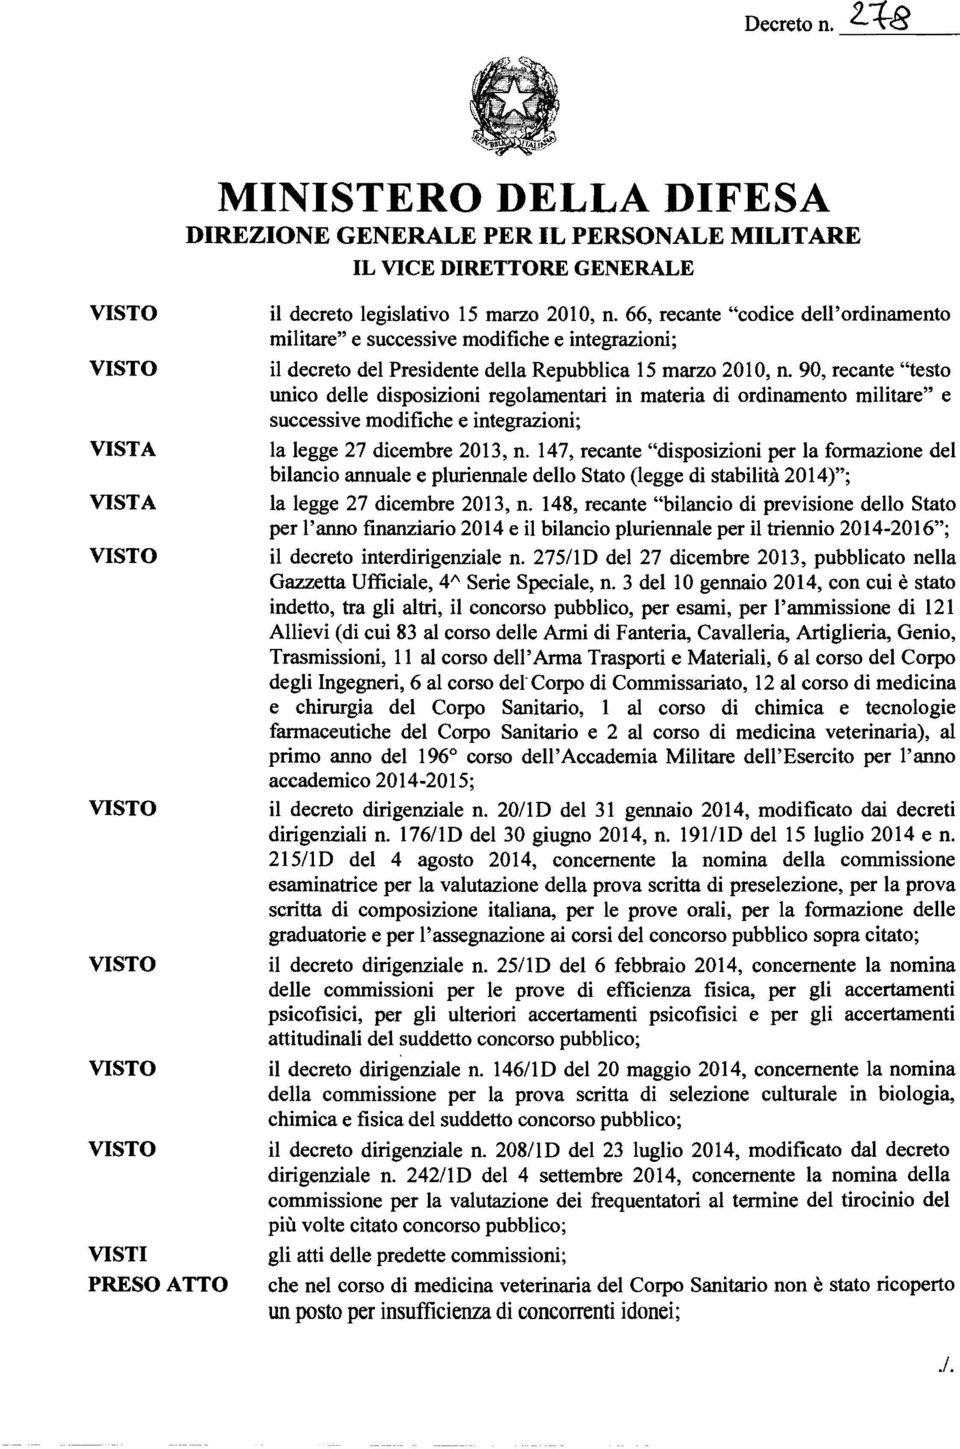 90, recante "testo unico delle disposizioni regolamentari in materia di ordinamento militare" e successive modifiche e integrazioni; la legge 27 dicembre 2013, n.